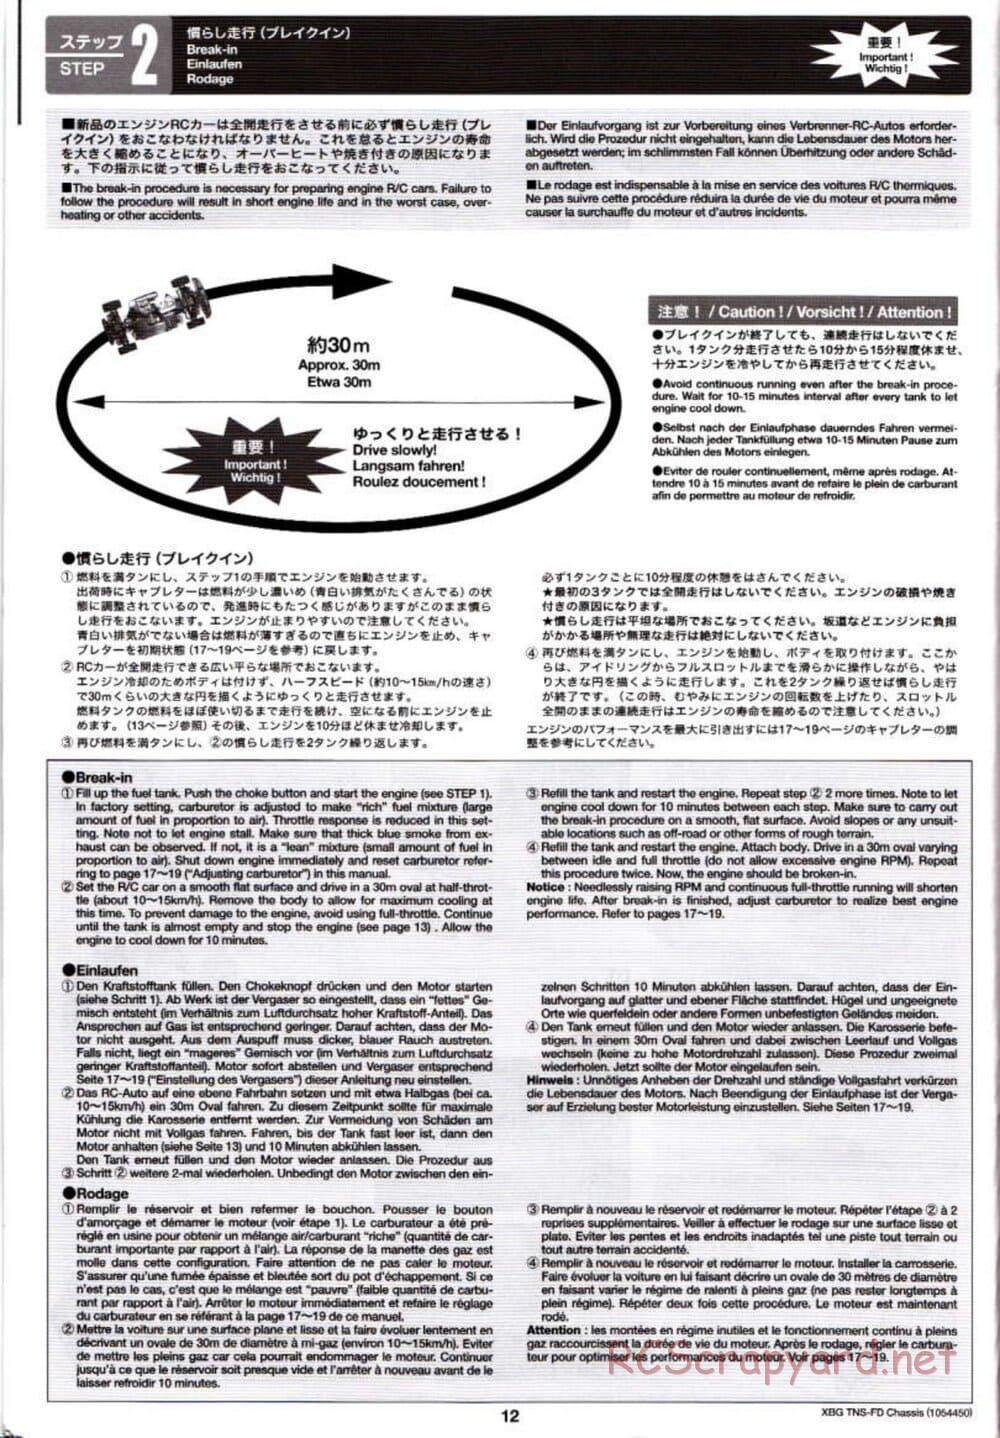 Tamiya - TNS-FD Chassis - Manual - Page 12